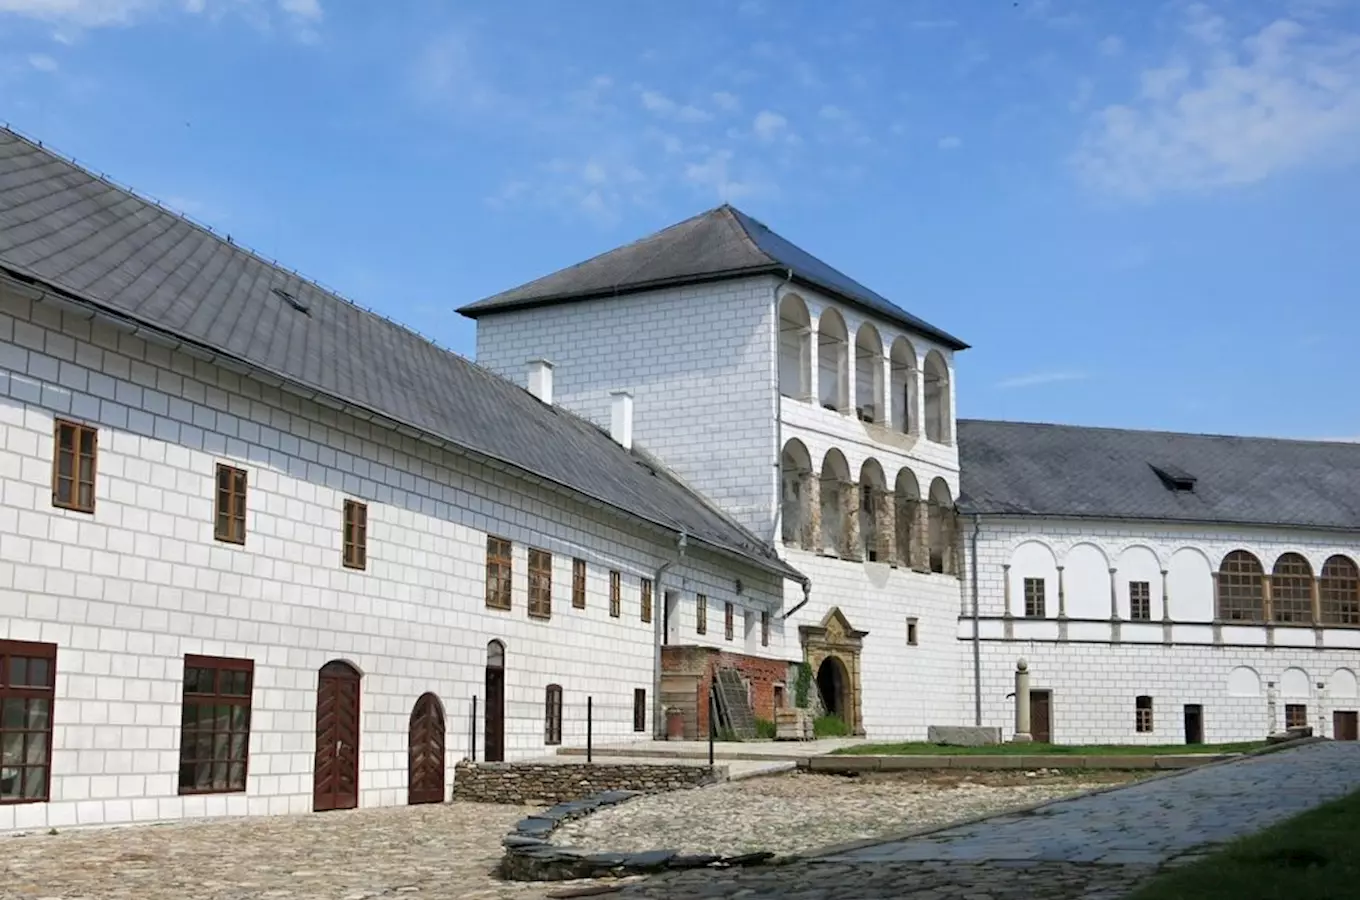 Zrekonstruovaný renesanční zámek Kolštejn ožívá ve čtyřhvězdičkový historický hotel